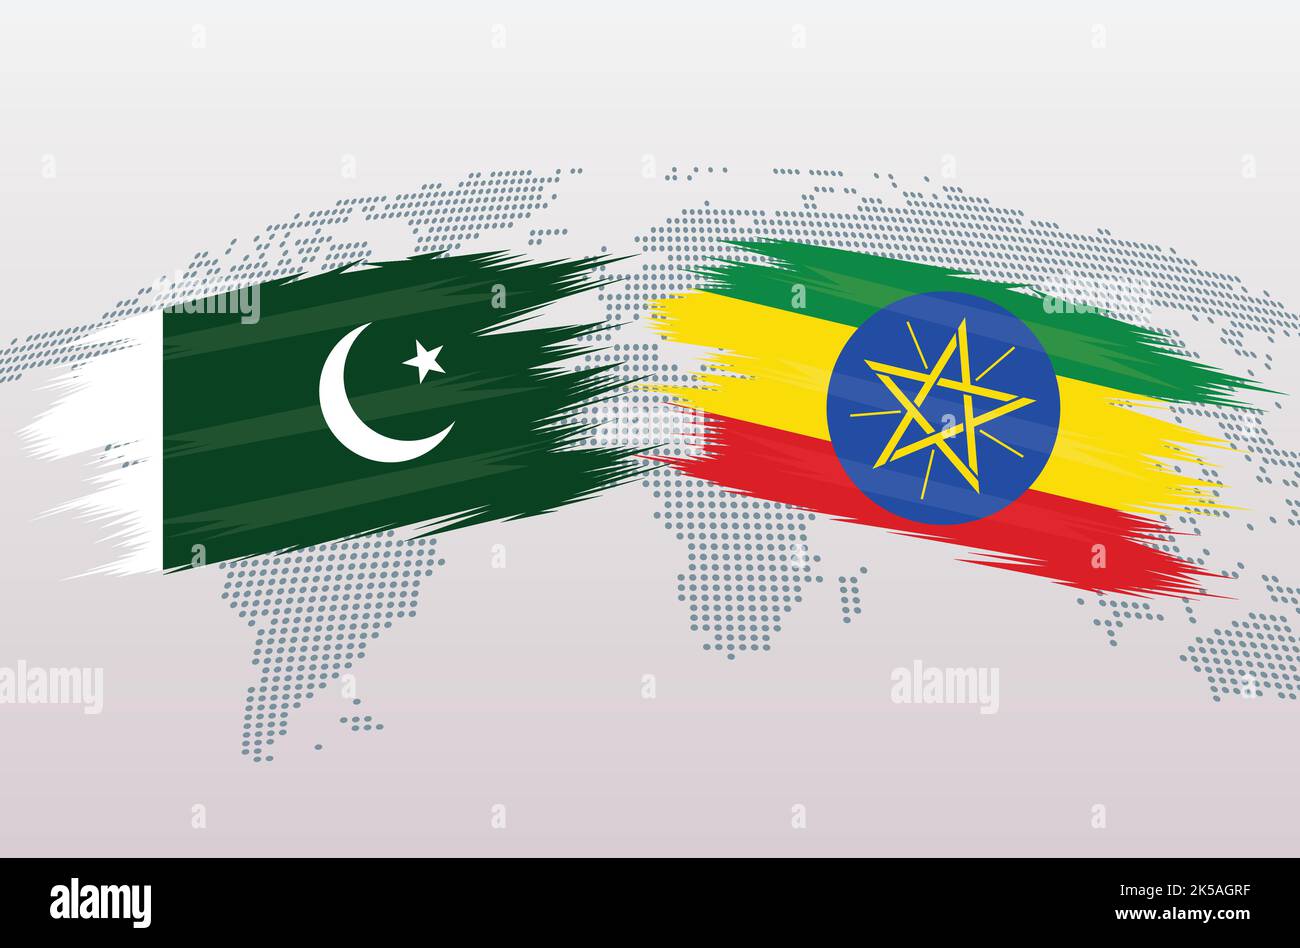 Bandiere Pakistan vs Etiopia. Bandiere della Repubblica islamica del Pakistan contro l'Etiopia, isolate su sfondo grigio della mappa del mondo. Illustrazione vettoriale. Illustrazione Vettoriale